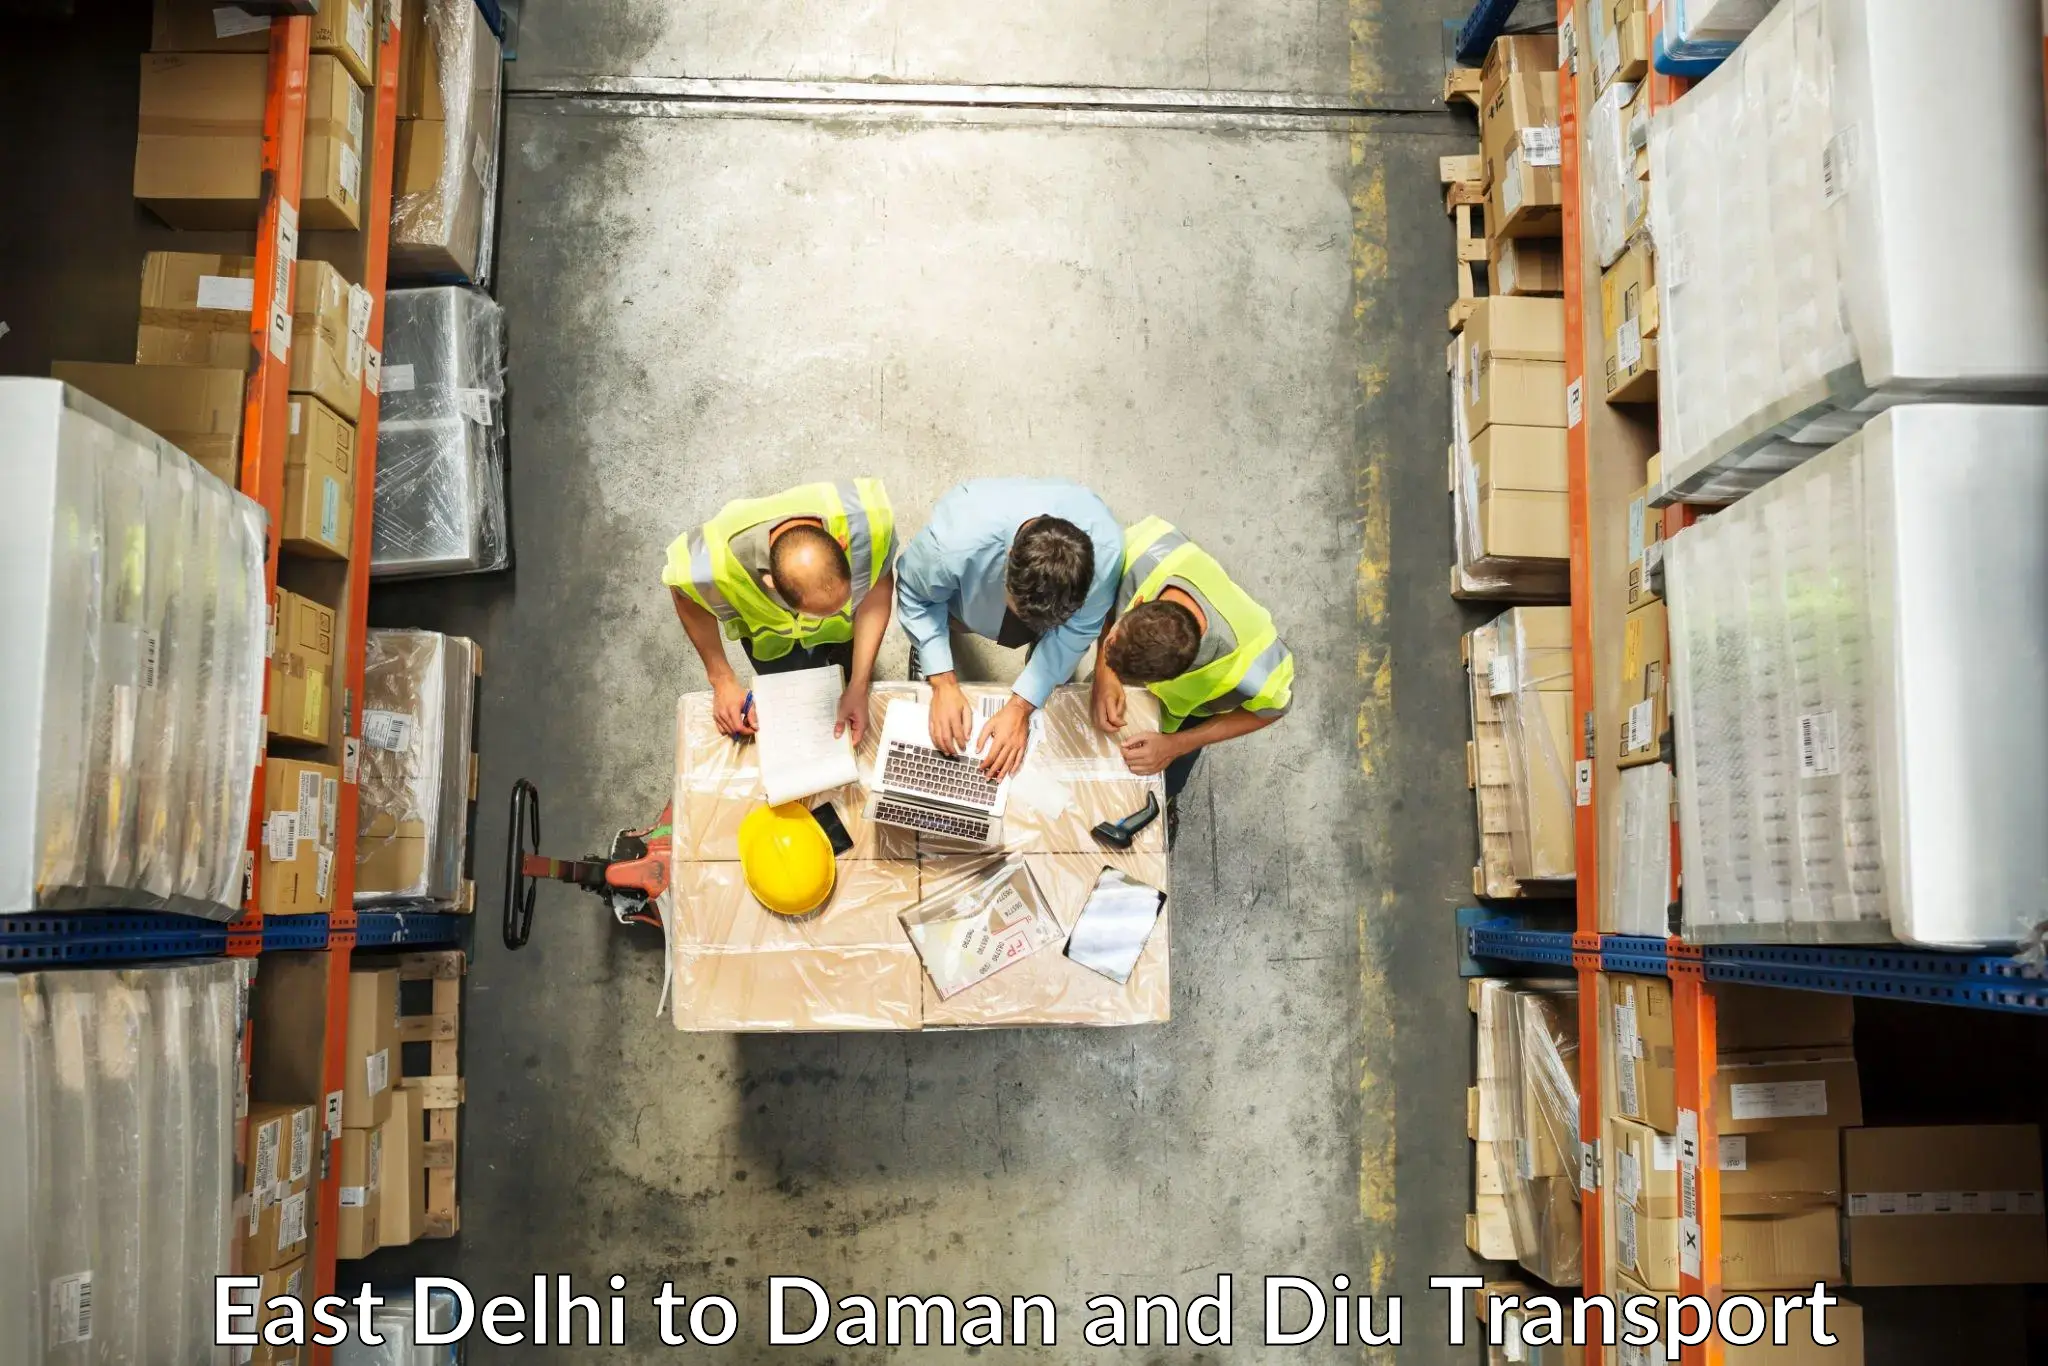 Furniture transport service East Delhi to Diu